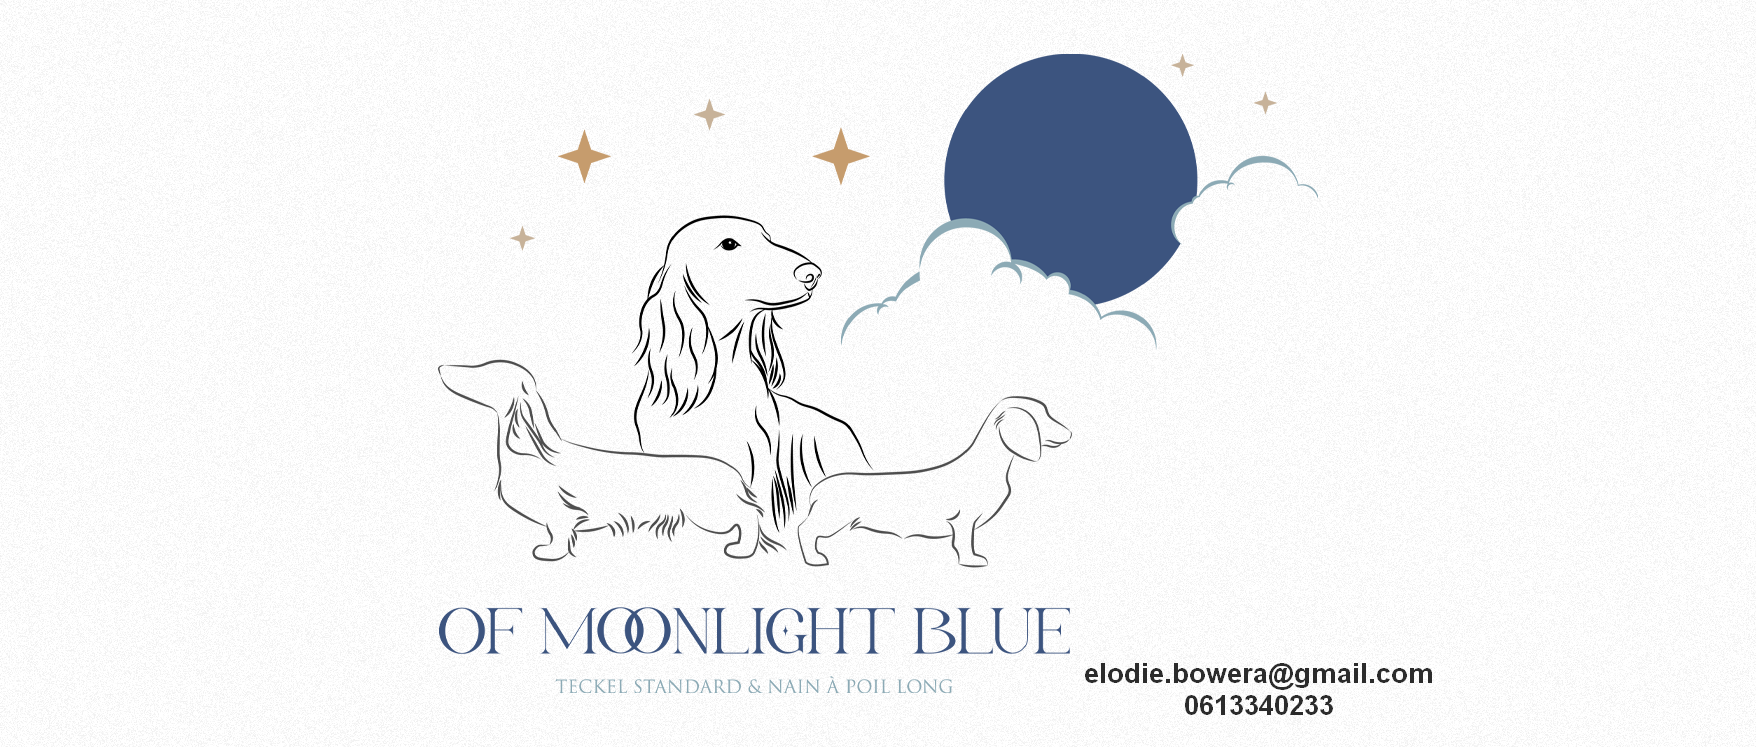 Of Moonlight Blue